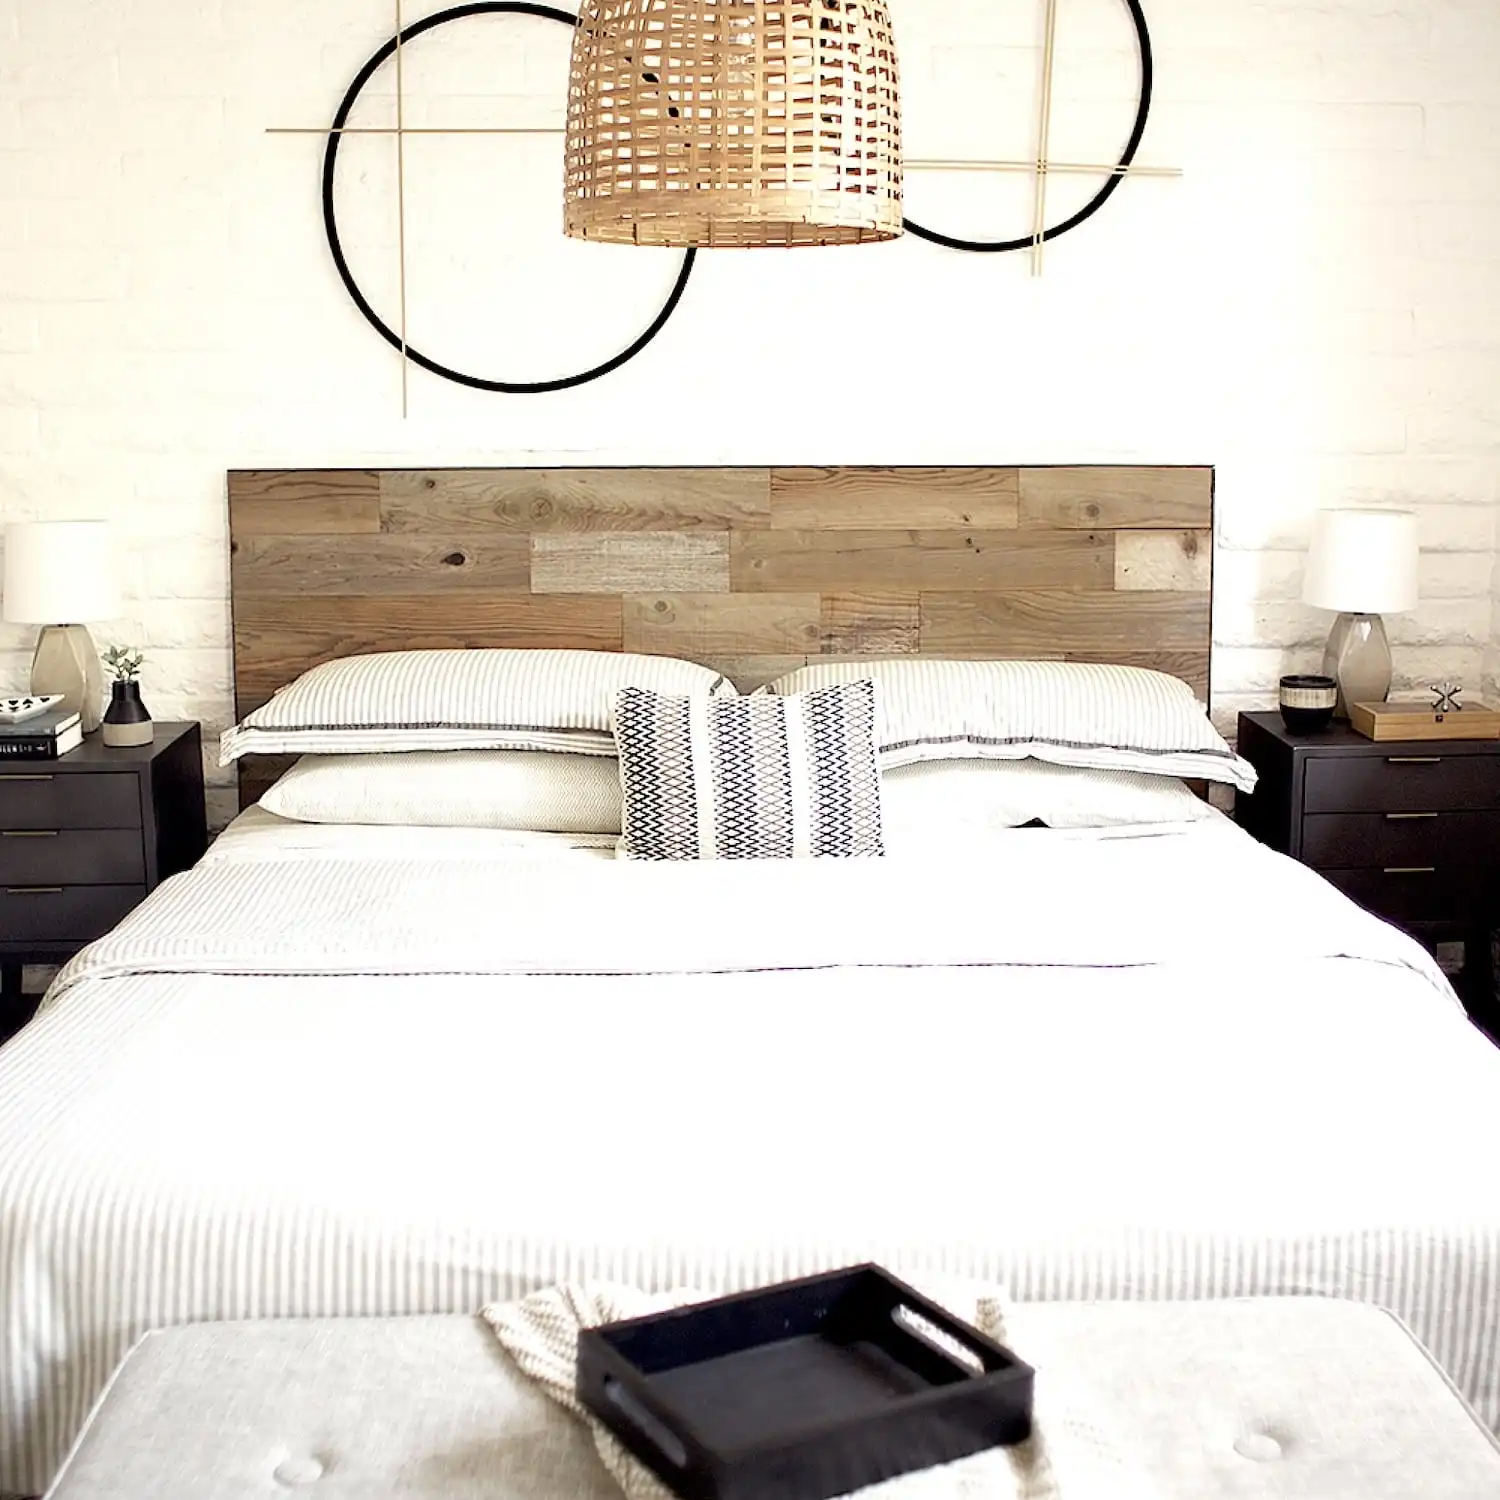  Intérieur de chambre moderne avec tête de lit rustique en bois, literie blanche et tables de chevet symétriques. 